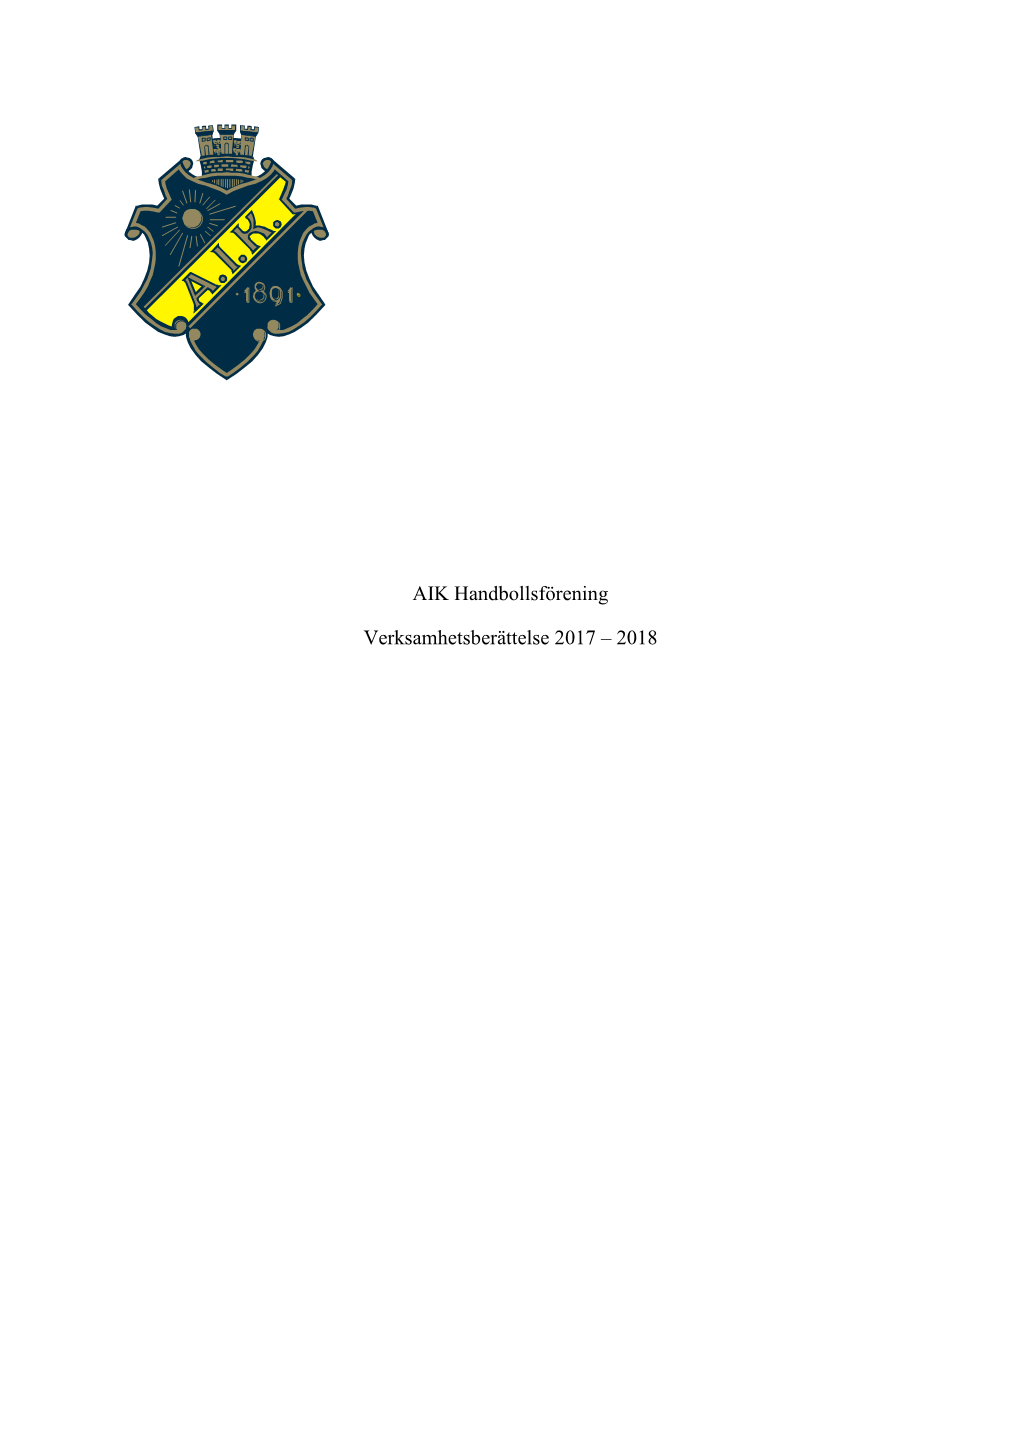 AIK Handboll Verksamhetsberättelse 2017-2018